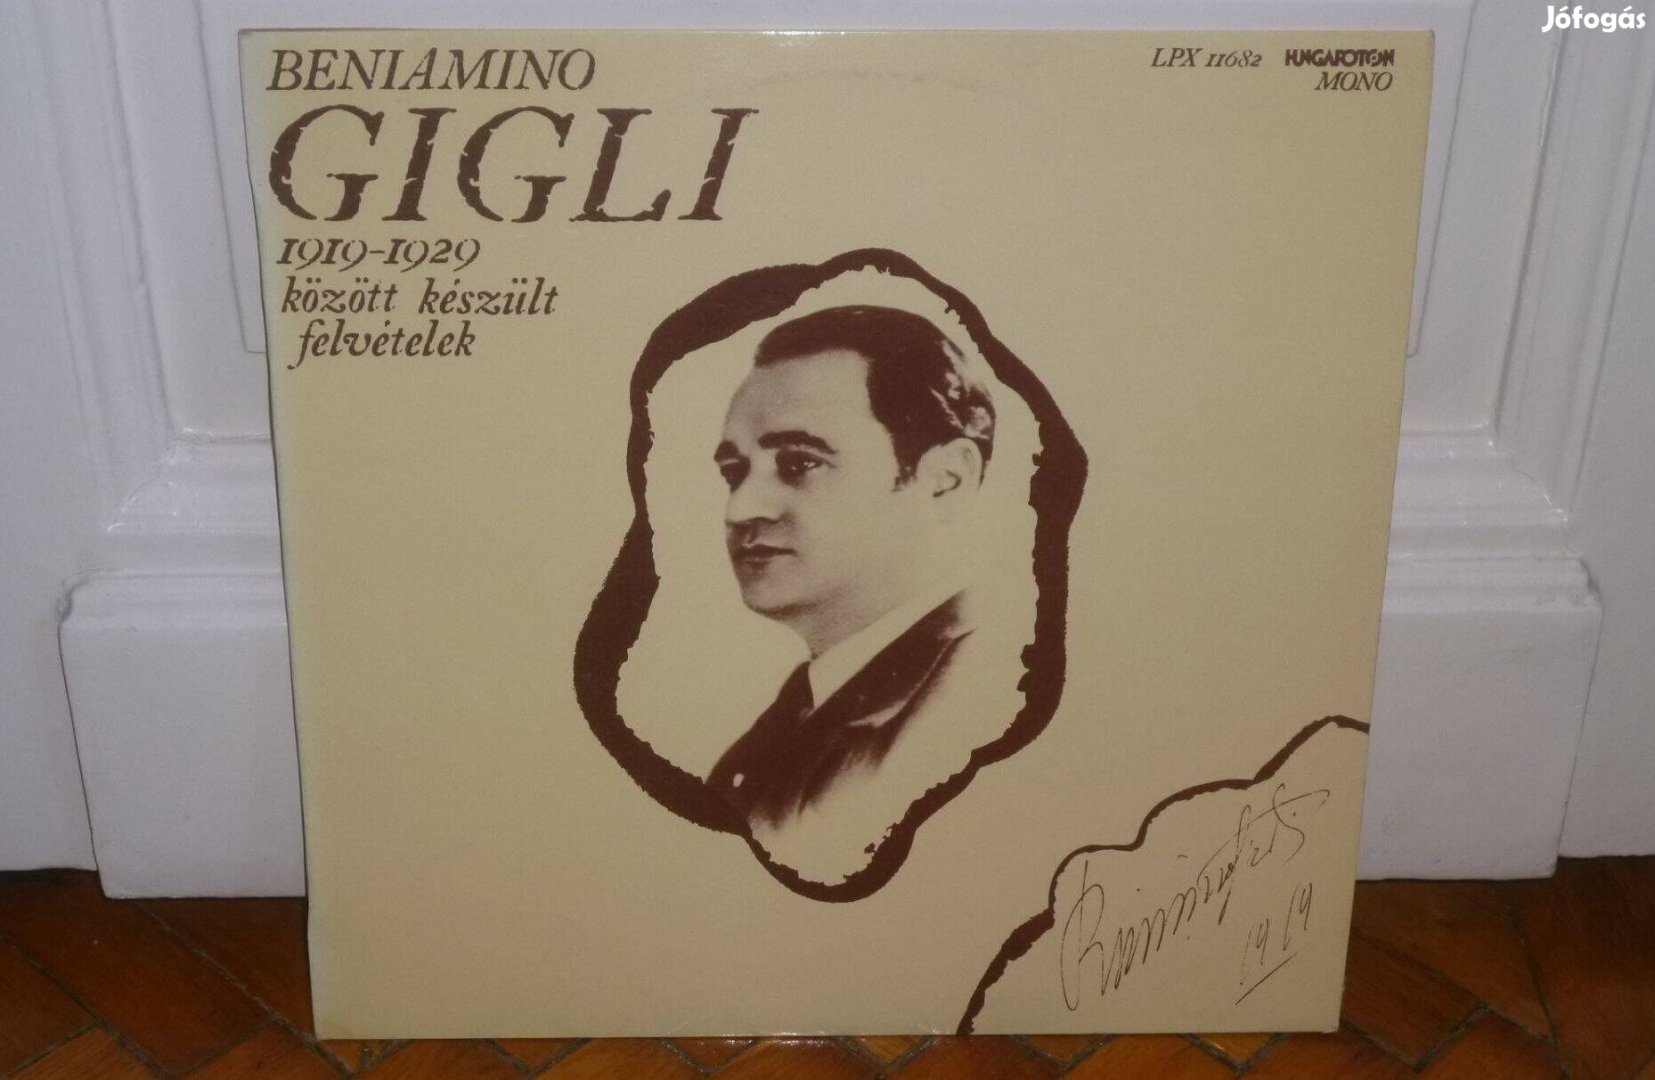 Beniamino Gigli - 1919 - 1929 Között Készült Felvételek LP